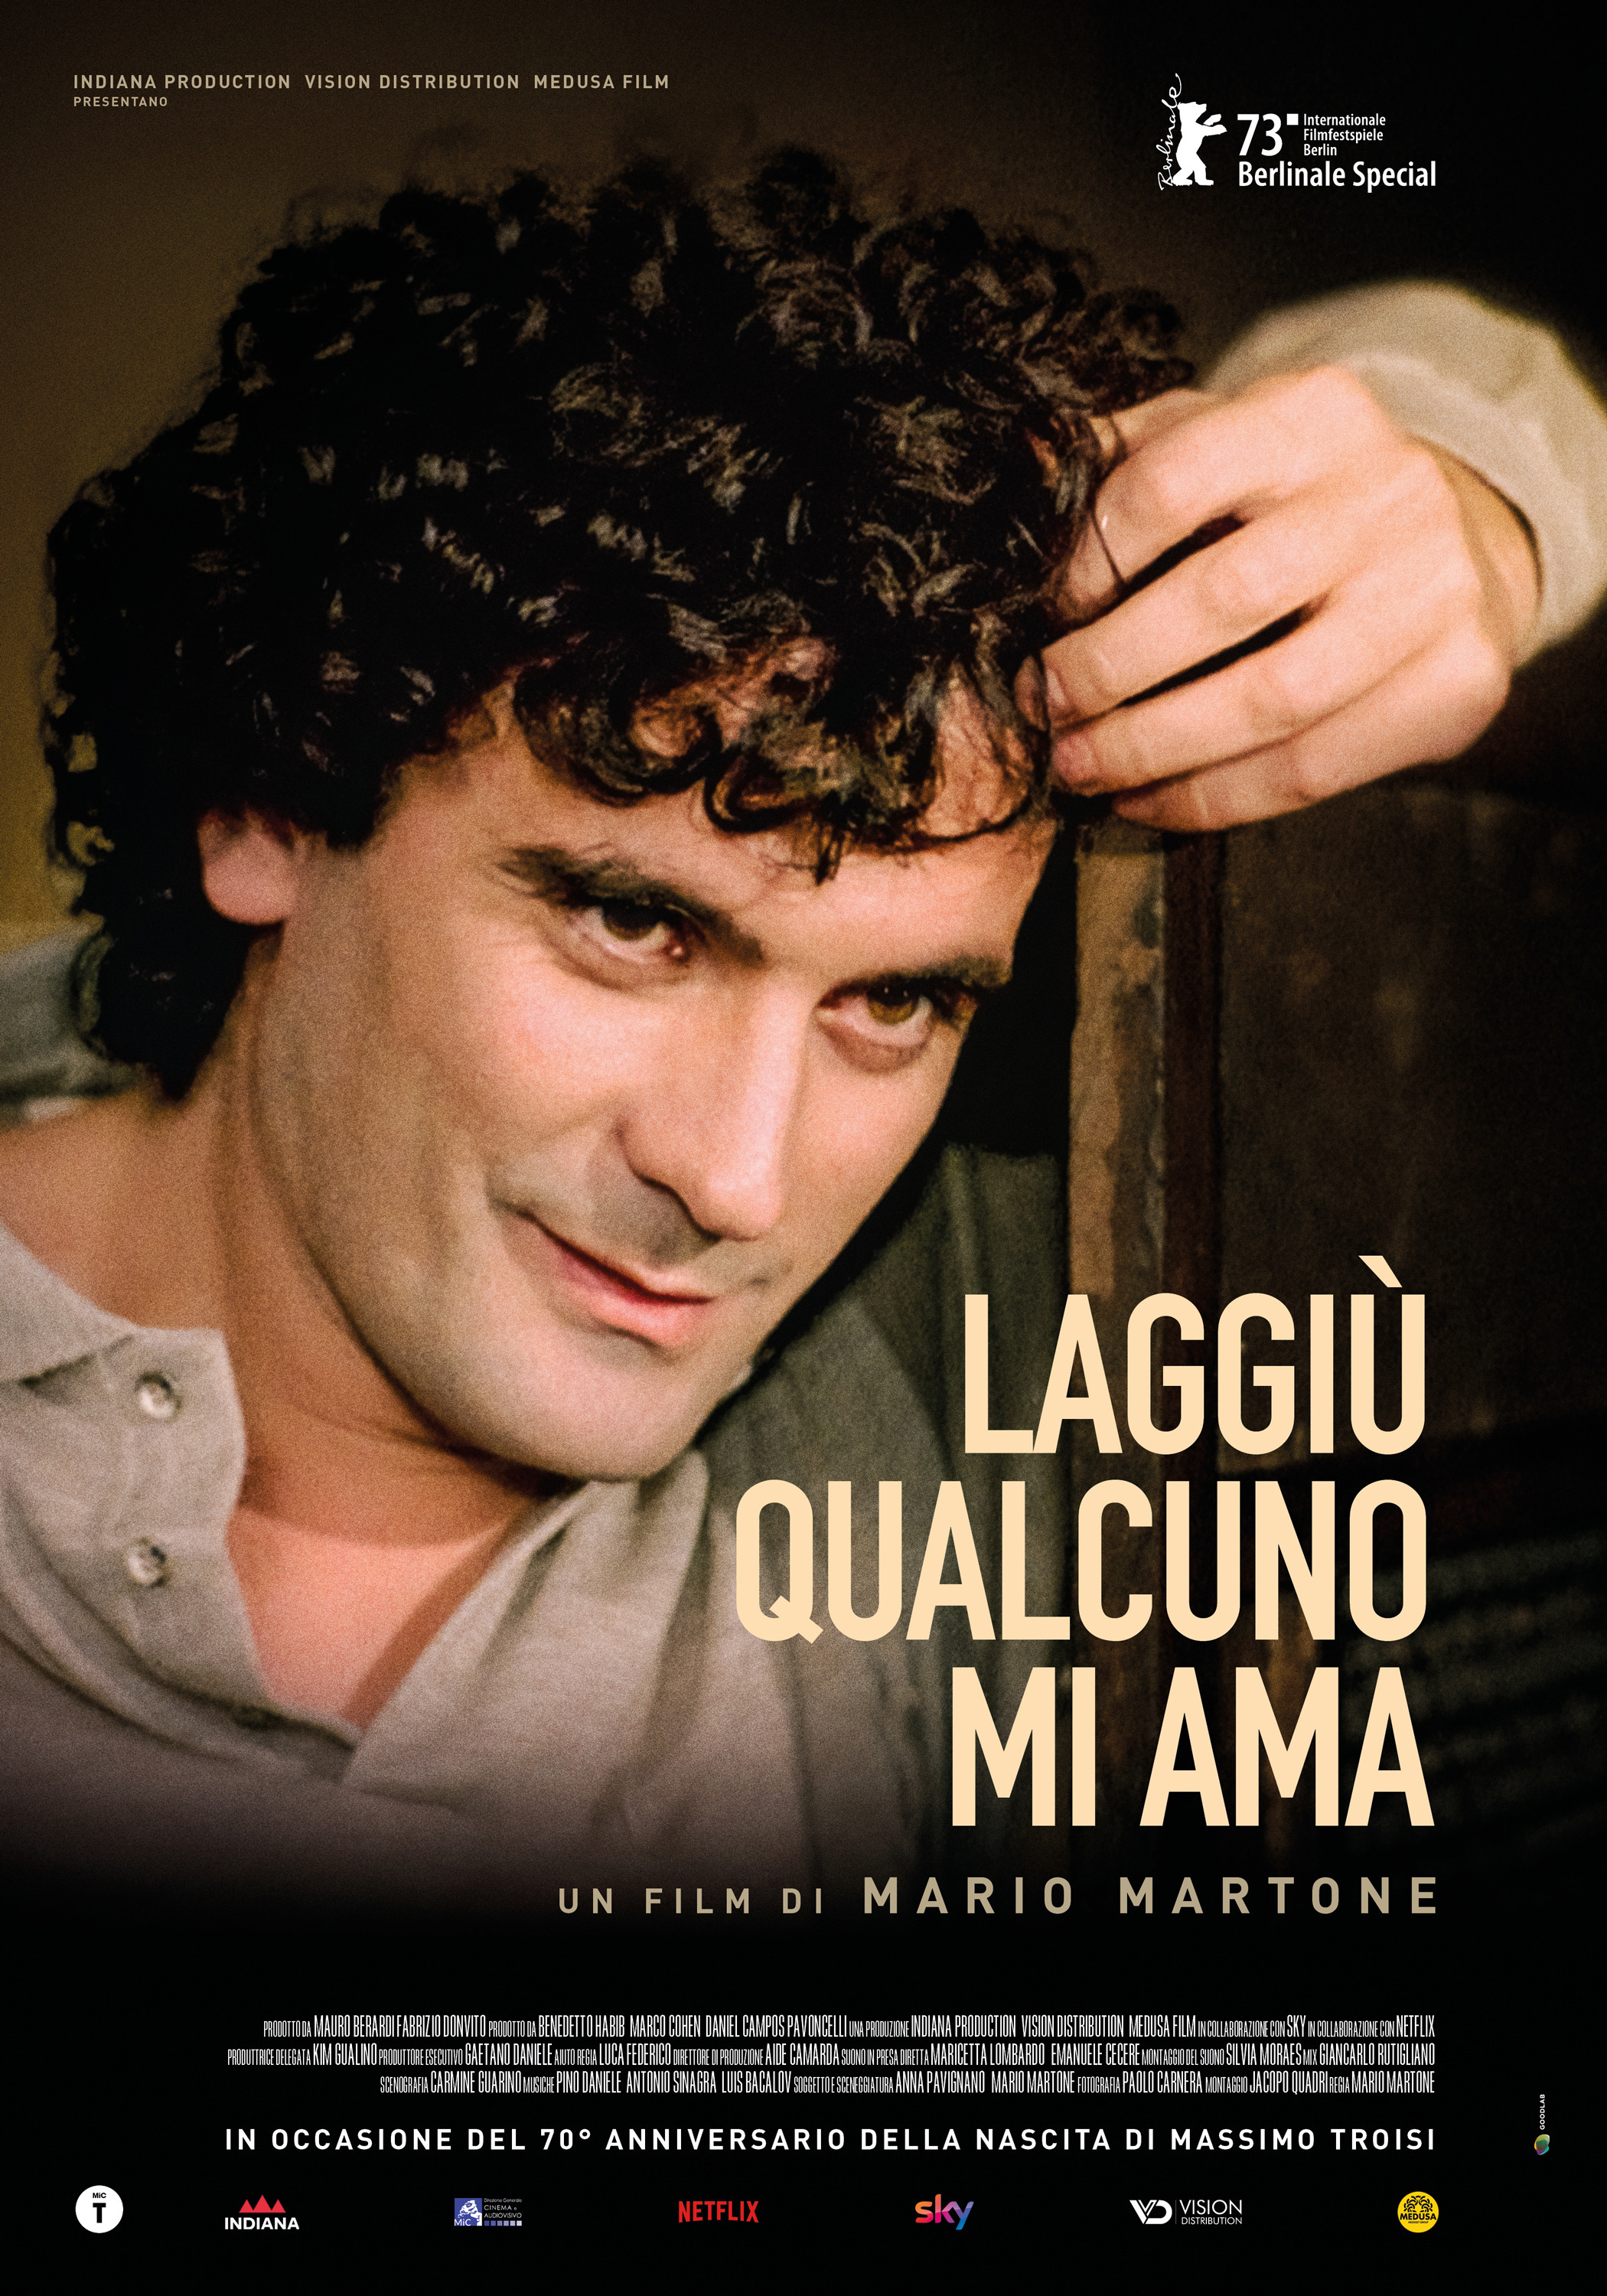 Mega Sized Movie Poster Image for Laggiù qualcuno mi ama (#1 of 3)